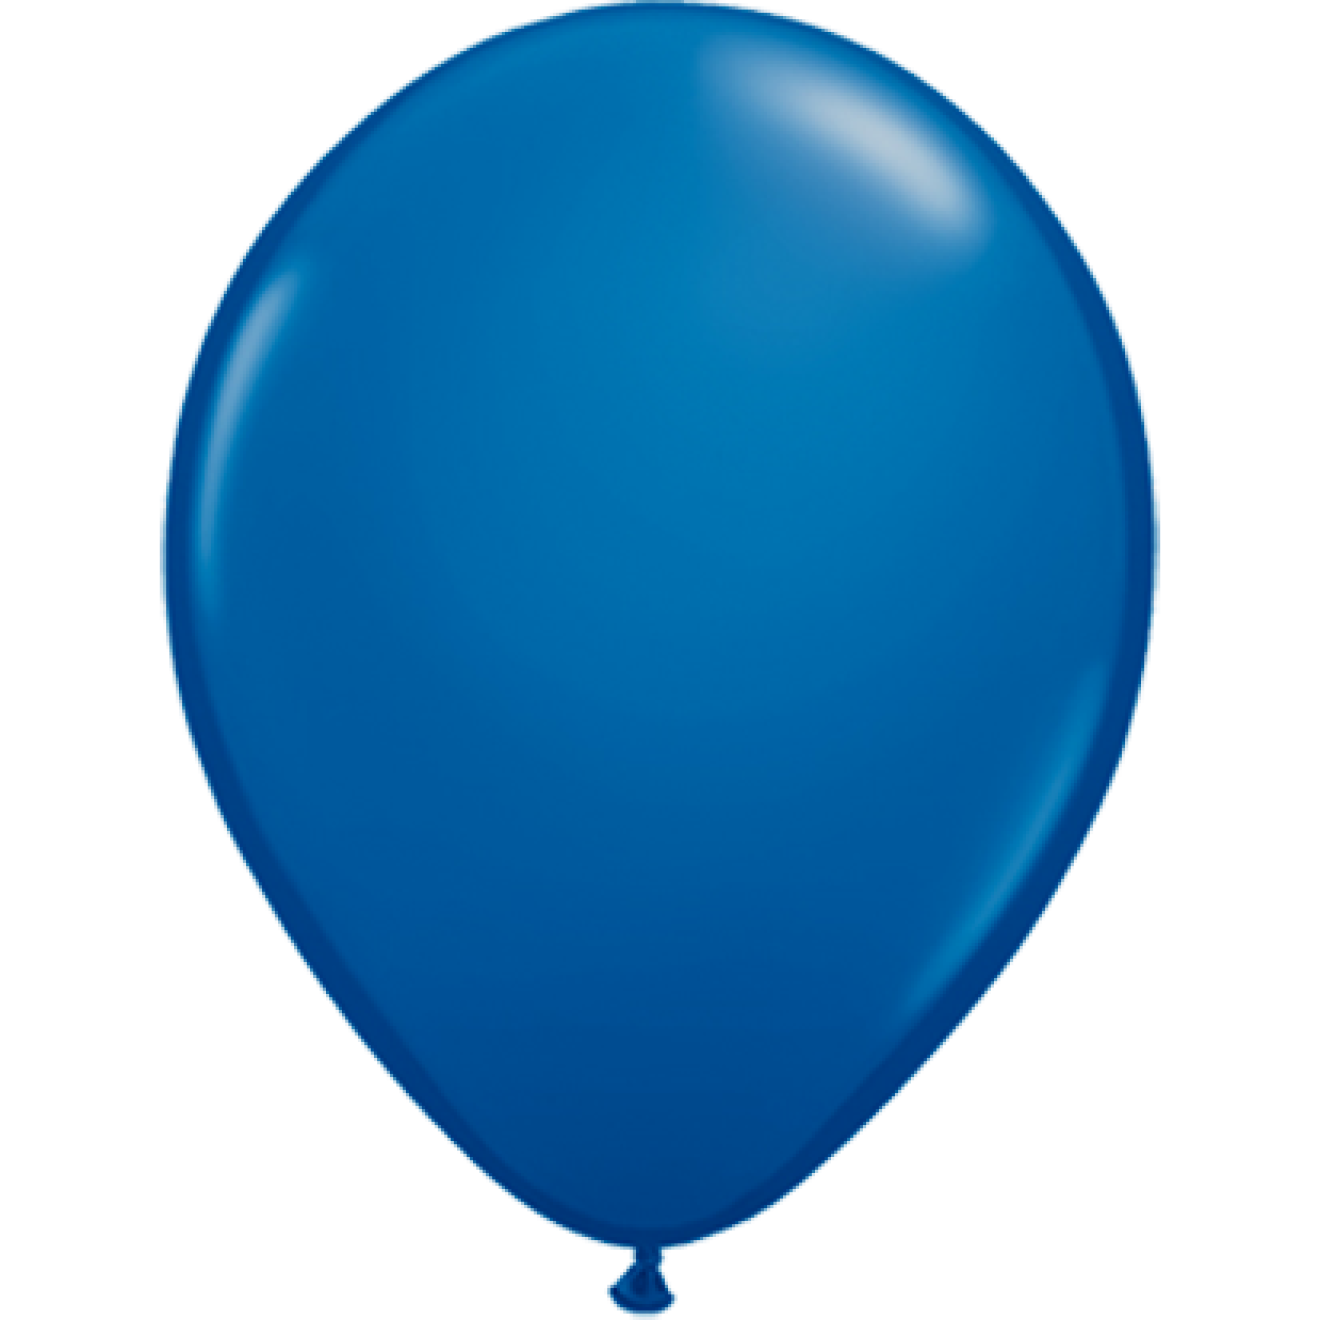 200 Stück Luftballons Pastell Blau 5 Inch Mini Latex Macaron Party Ballons Blue Luftballons für Party Geburtstag Hochzeit Verlobung Jubiläum Weihnachtsfest Dekorationen Lieferant